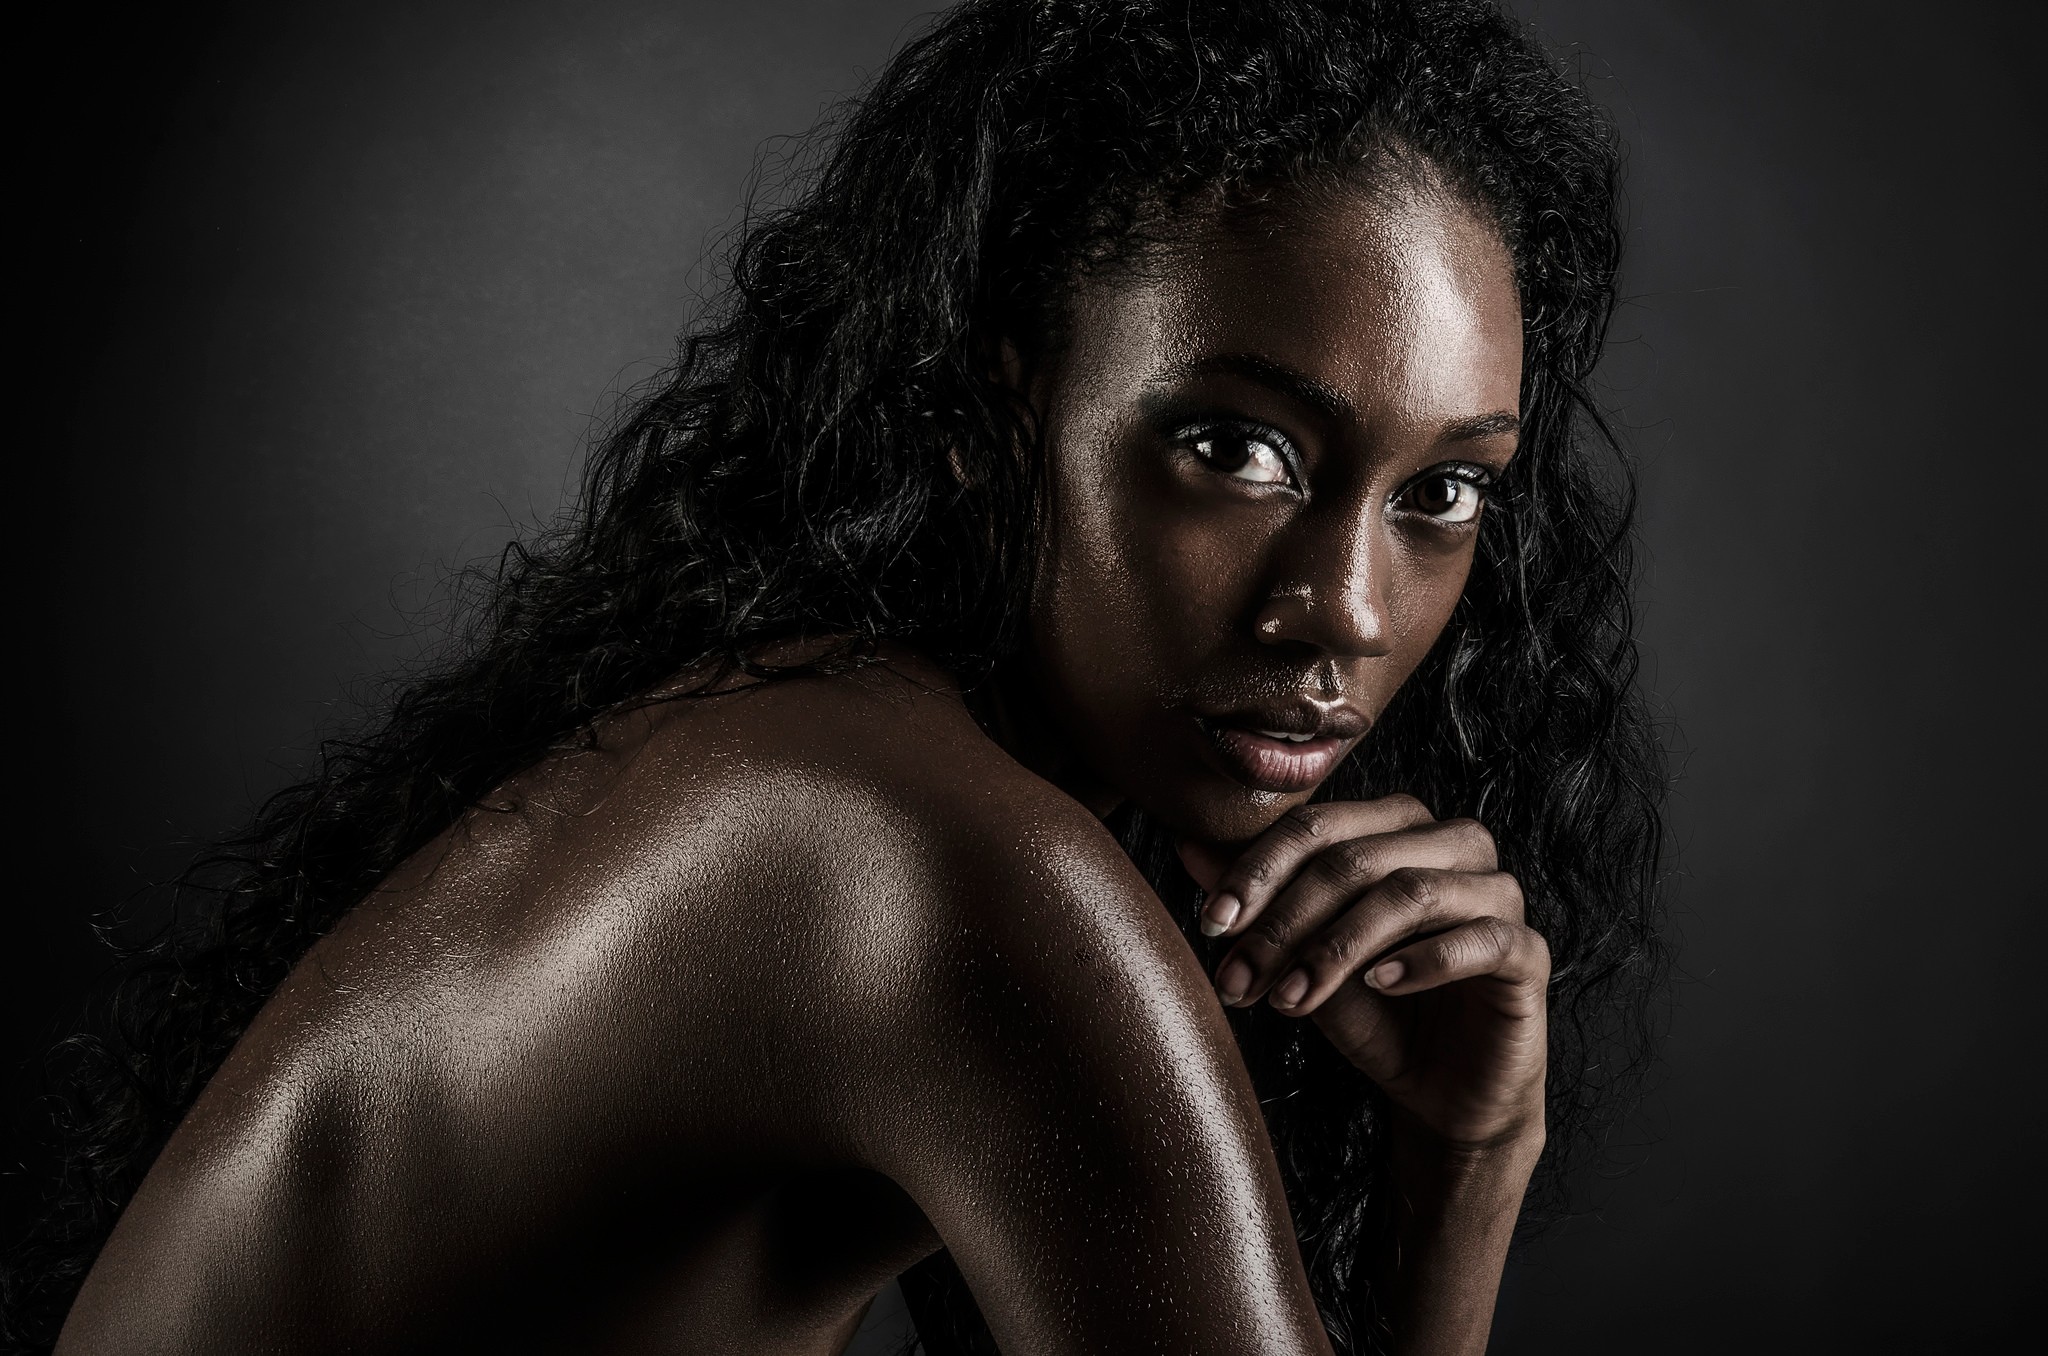 People 2048x1356 women face model dark skin black hair nude looking at viewer closeup women indoors indoors studio long hair simple background juicy lips